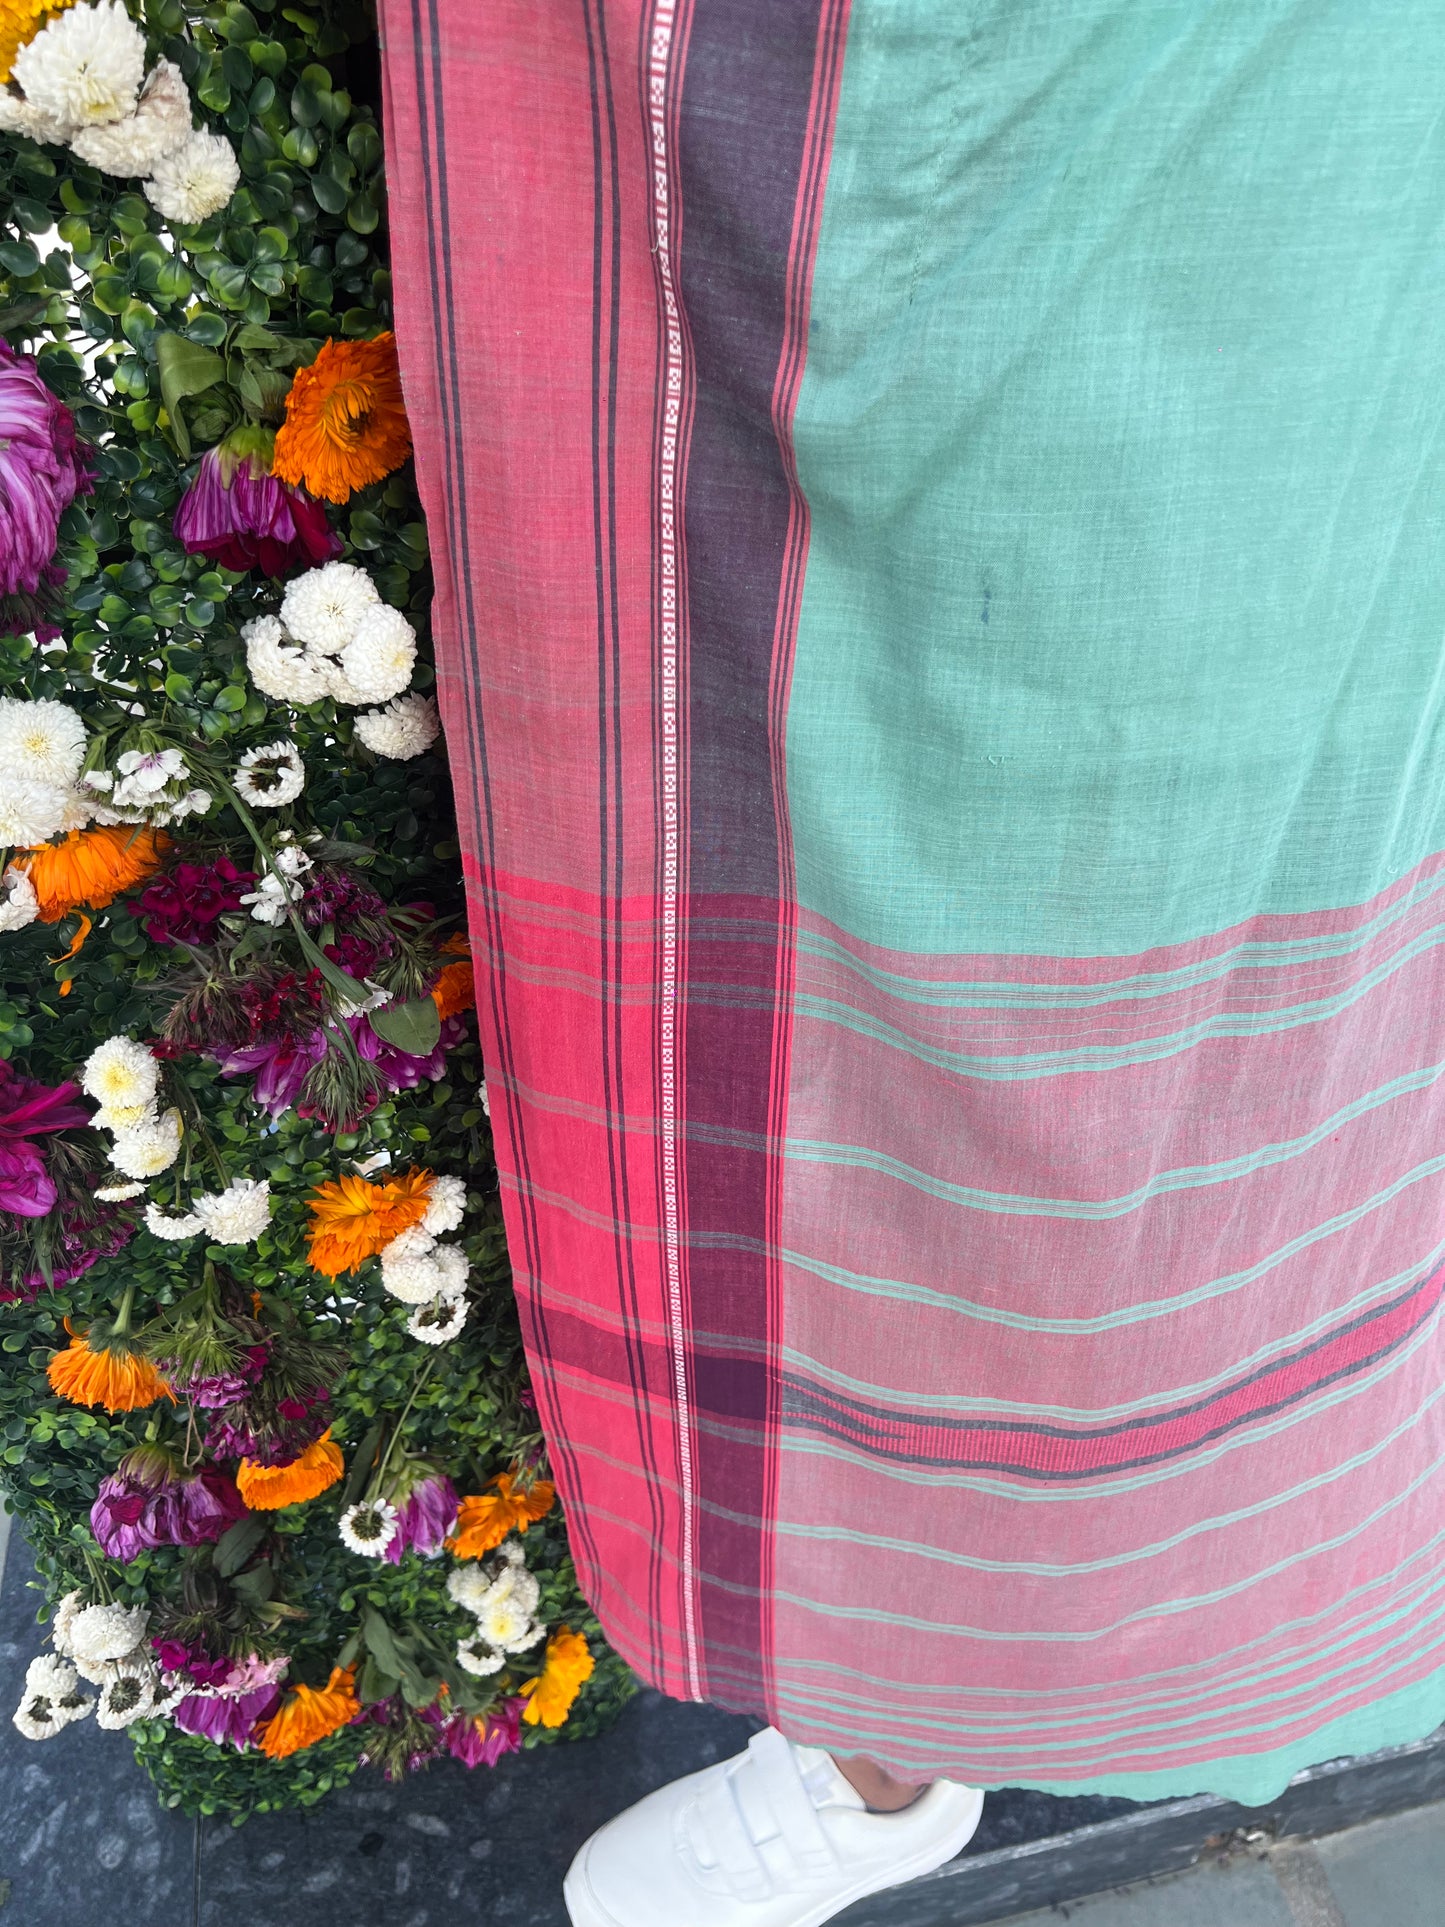 South Indian Cotton Saree Kaftan Dress - Cerulean Berry